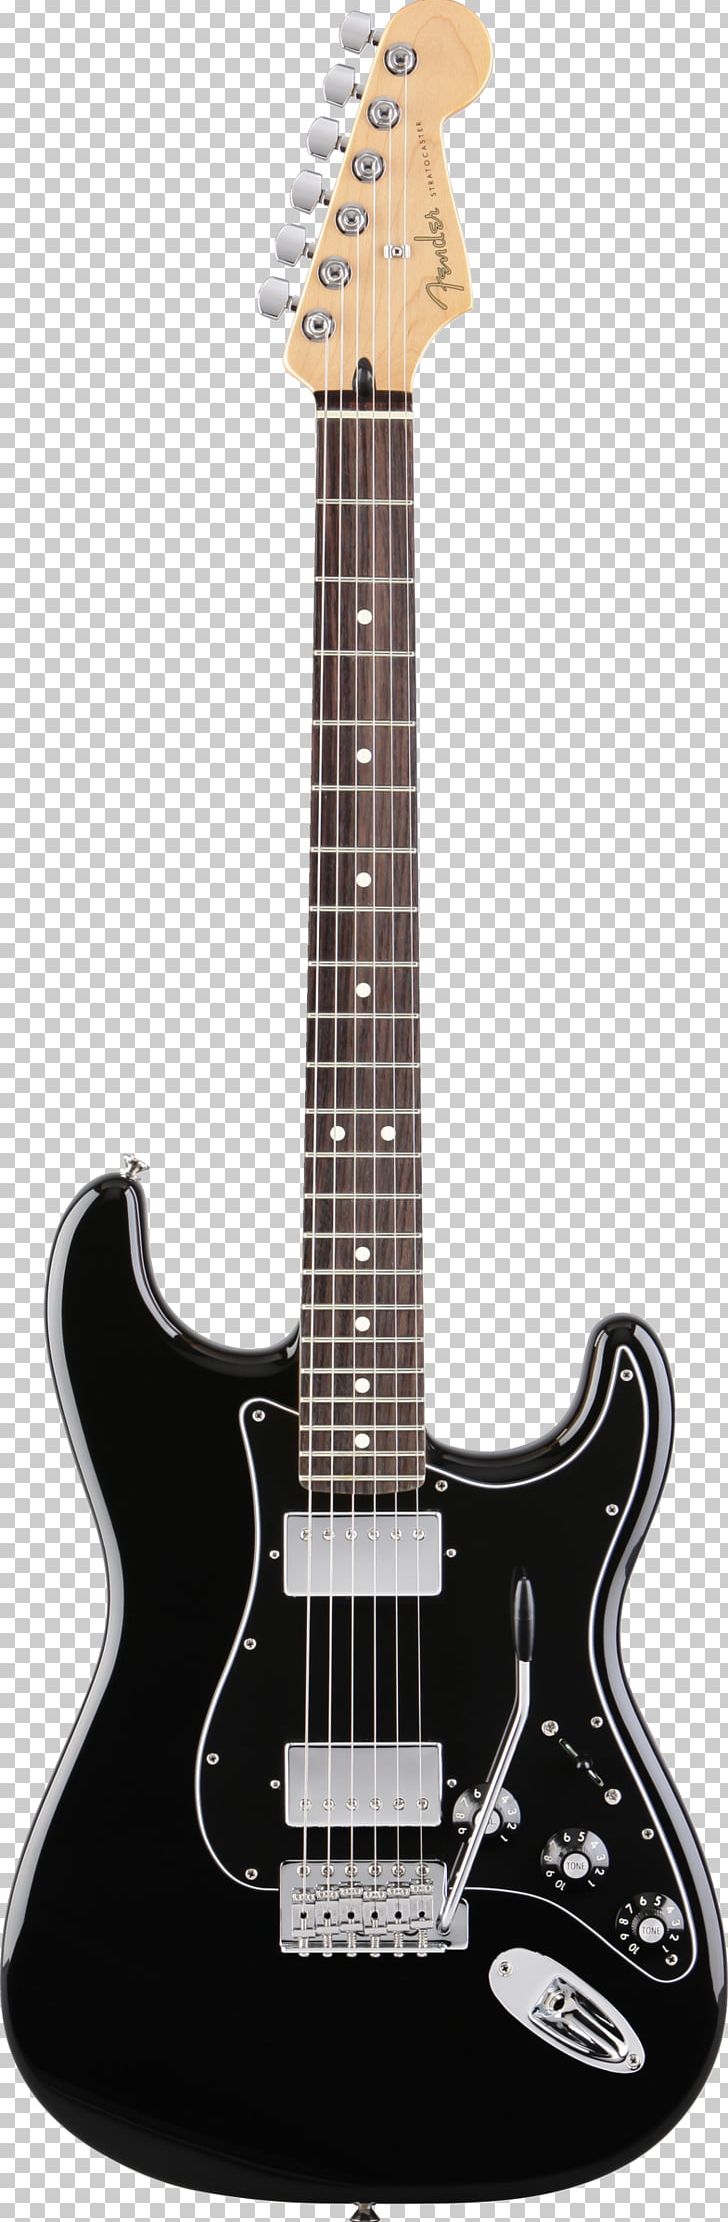 Fender Stratocaster Fender Jaguar Fender Telecaster Fender Jazzmaster Fender Musical Instruments Corporation PNG, Clipart, Acoustic Electric Guitar, Acoustic Guitar, Electric Guitar, Electronic, Fingerboard Free PNG Download